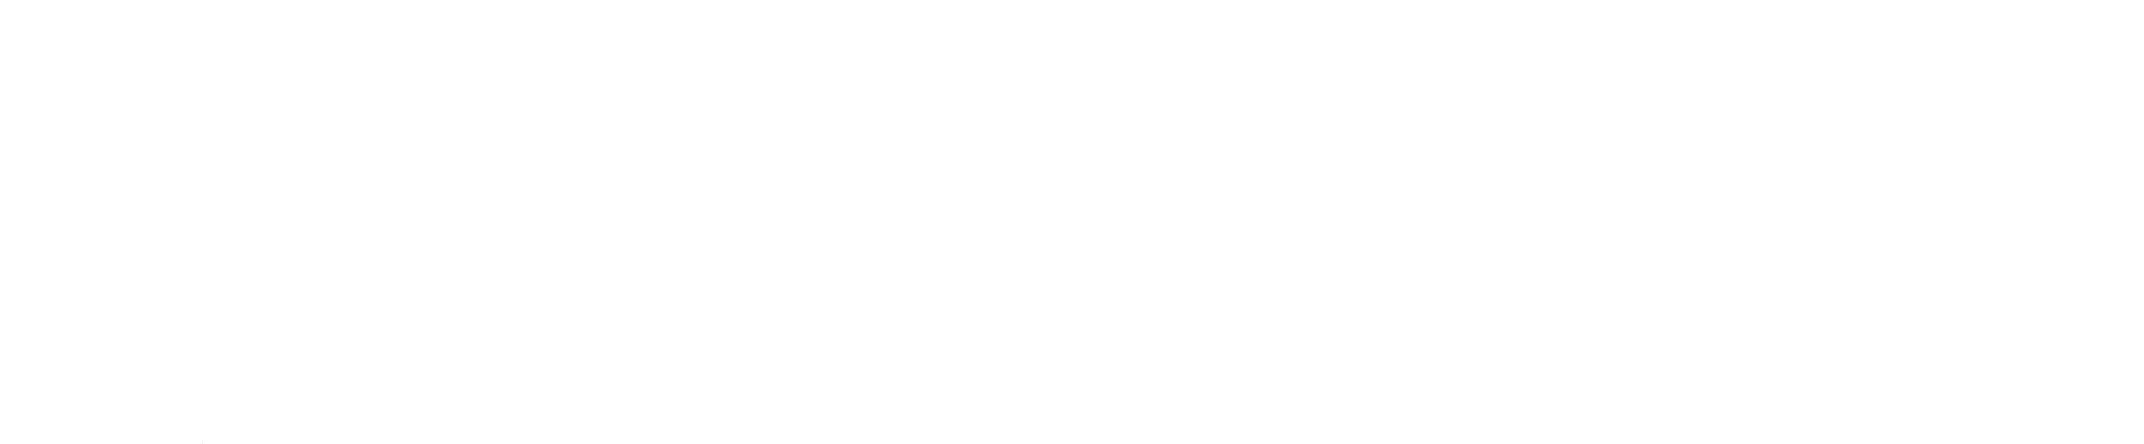 Vi är medlemmar i Glasbranschföreningen, som är en bransch- och arbetsgivarorganisation för glasmästerier i Sverige. http://www.gbf.se/